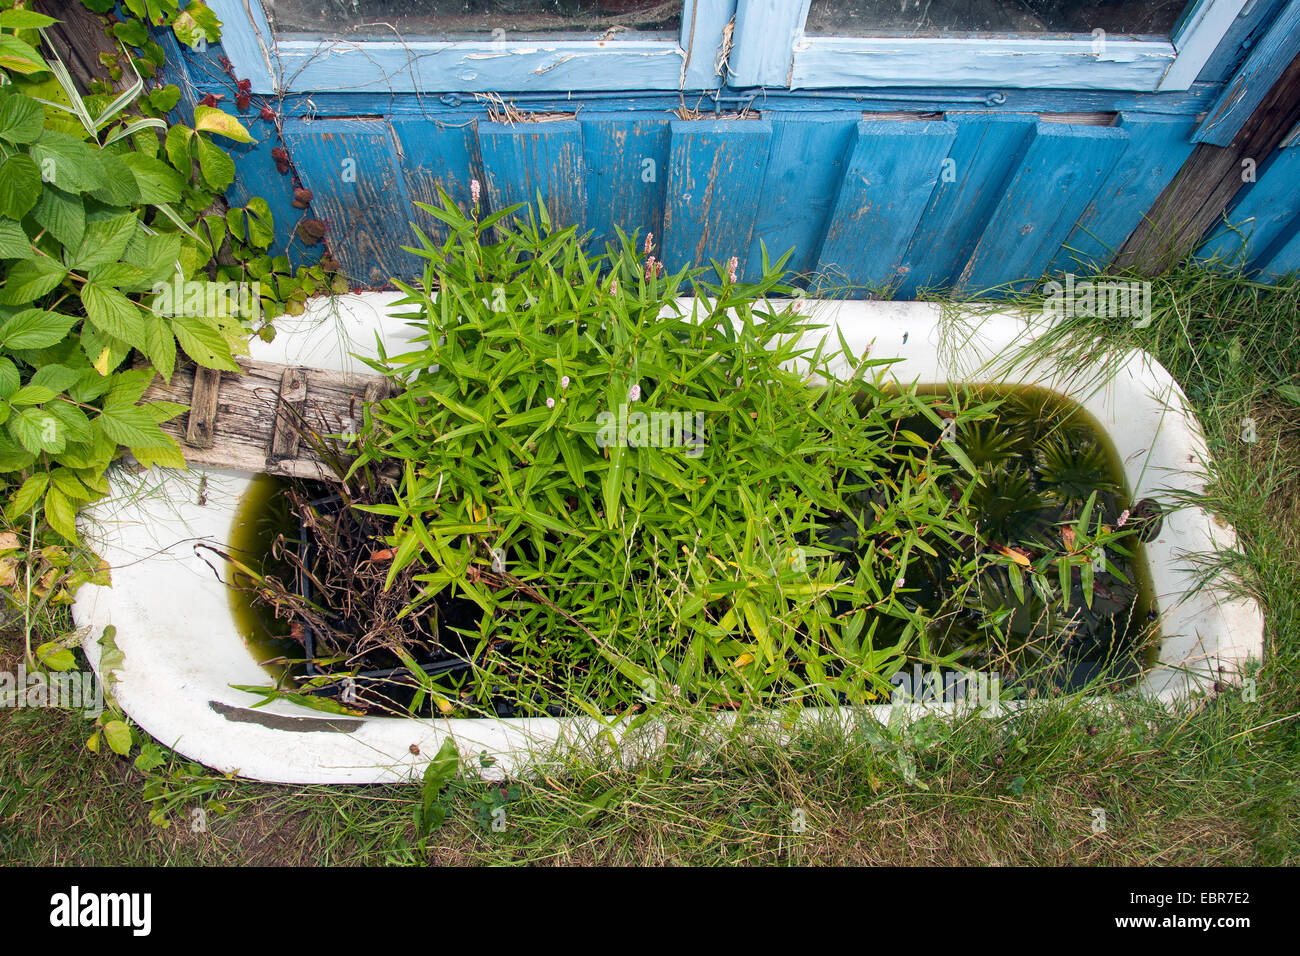 Un mini-étang, étang de jardin dans un jardin naturel. Vieille baignoire à remous dans le jardin a été planté servant de biotop pour animaux, Allemagne Banque D'Images